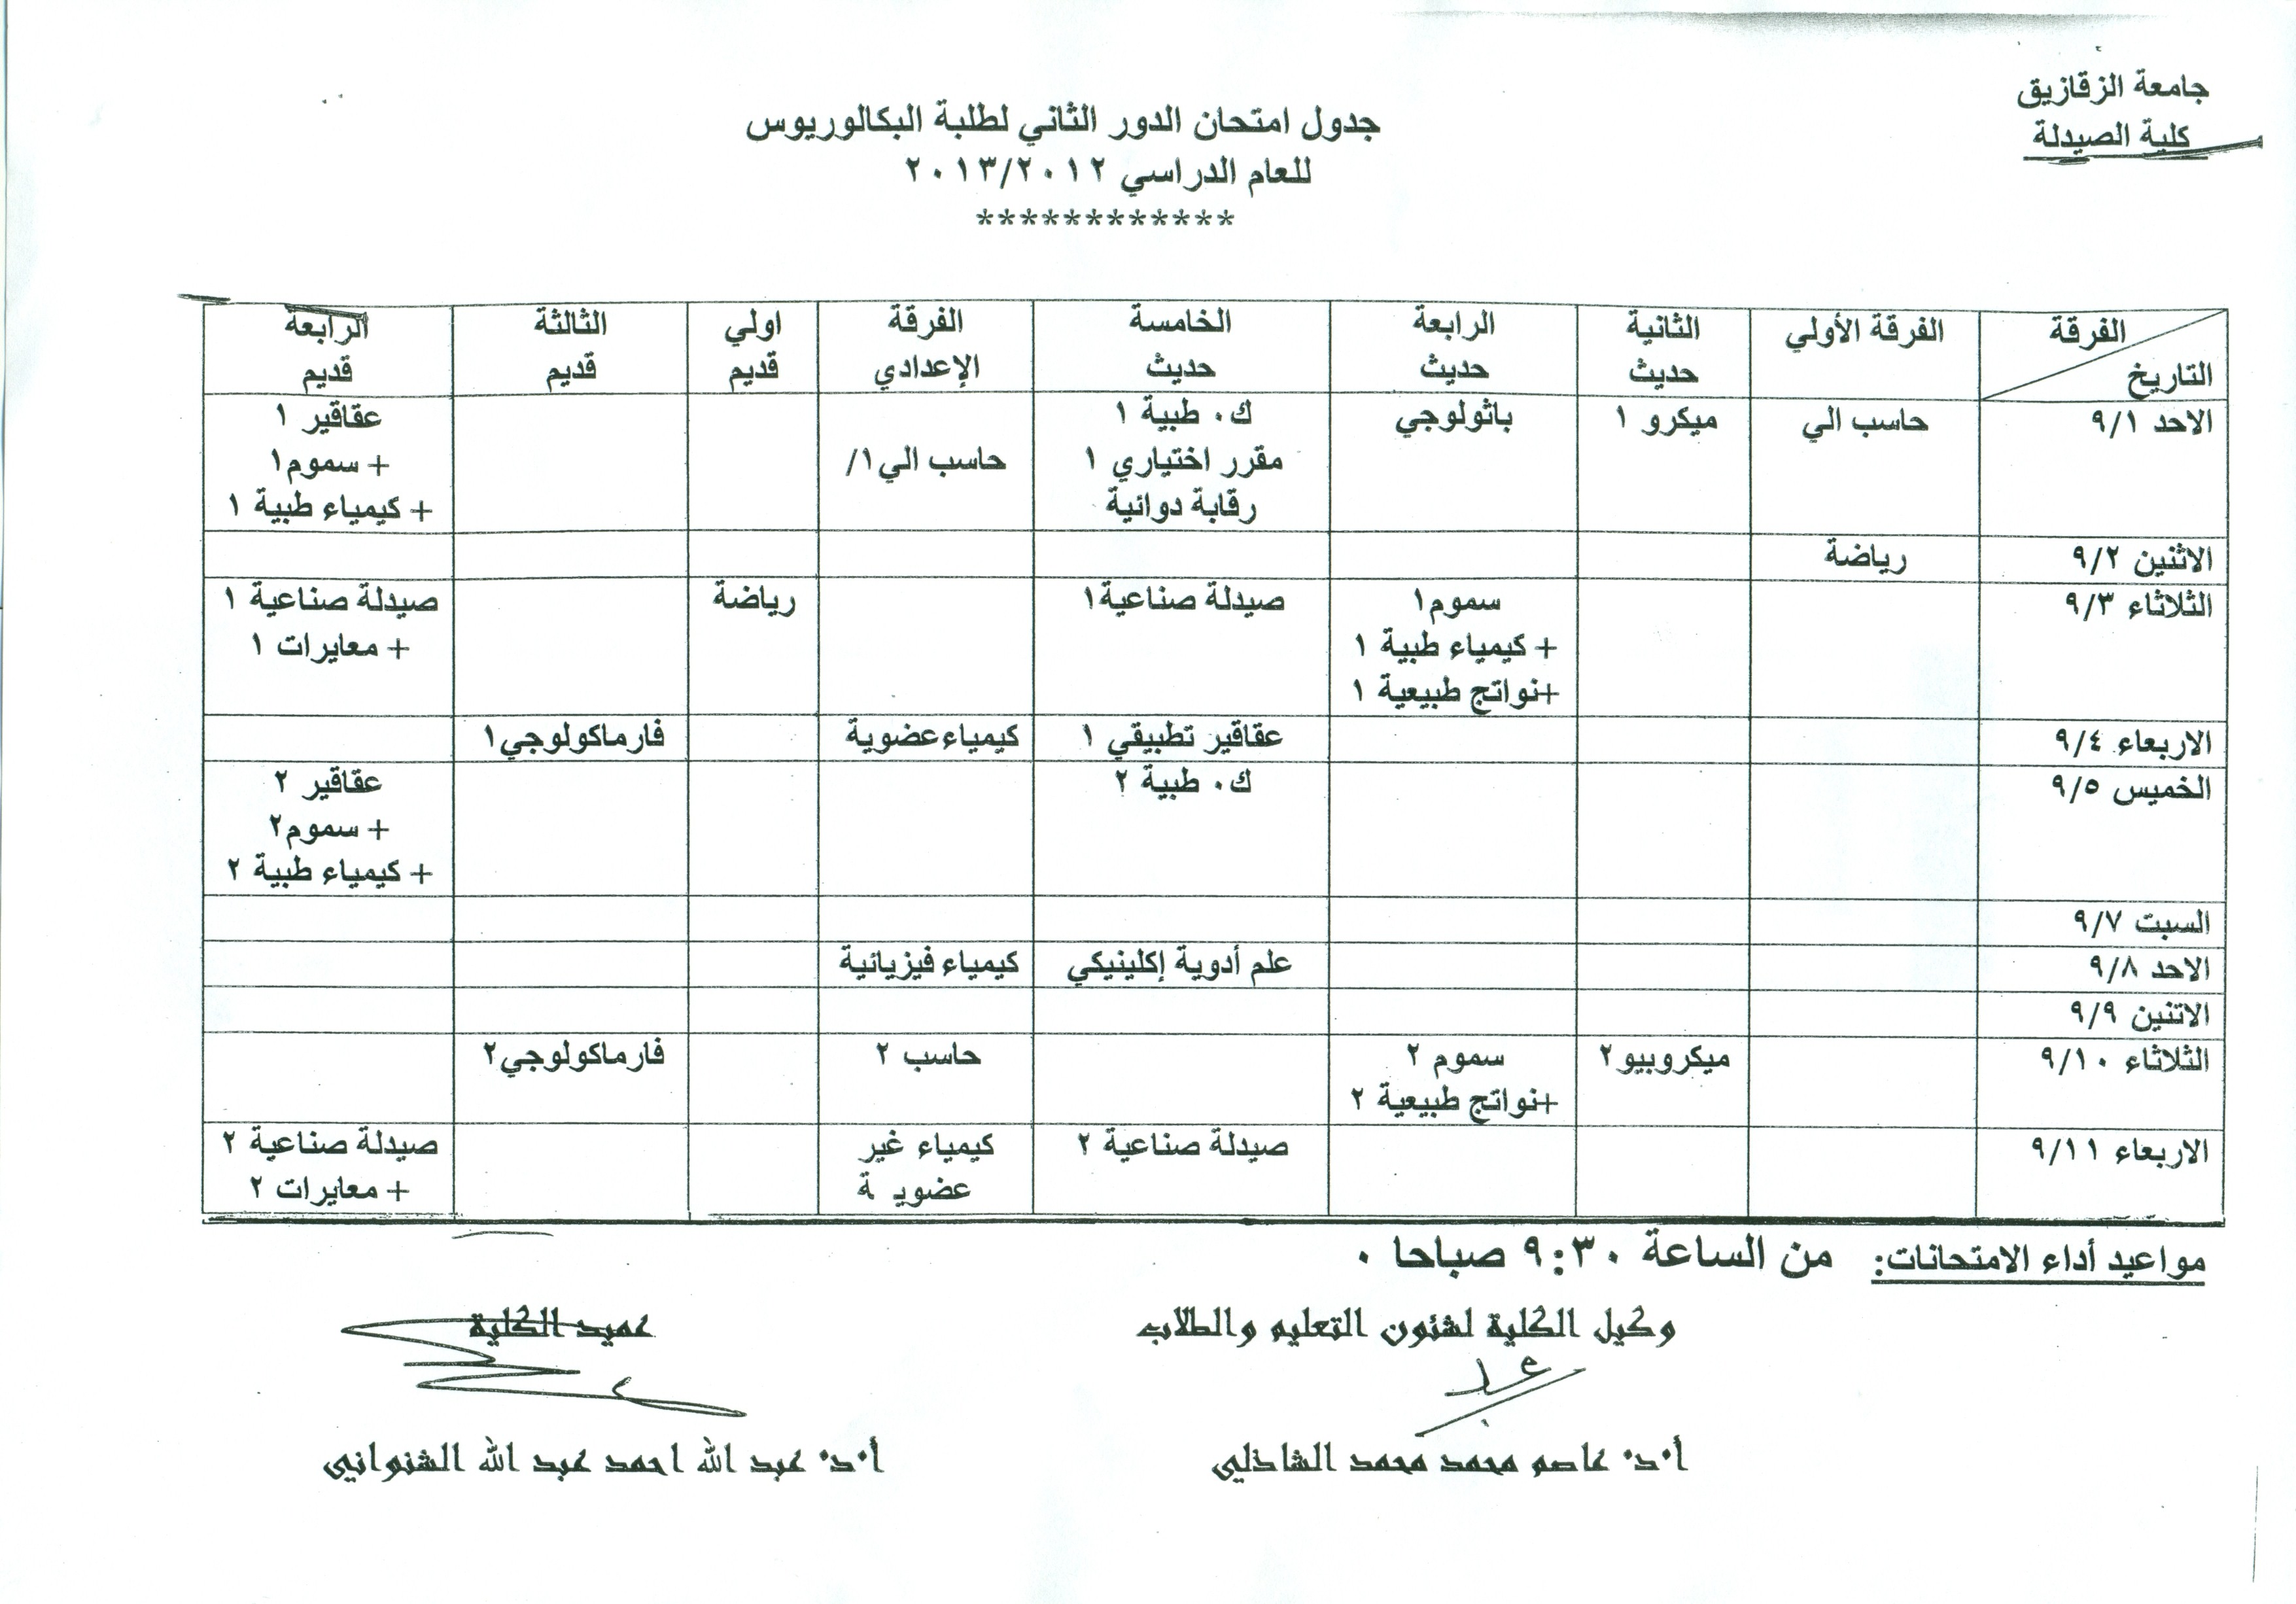 جدول إمتحان الدور الثانى لطلبة البكالوريوس بكلية الصيدلة  للعام الدراسى 2012/2013